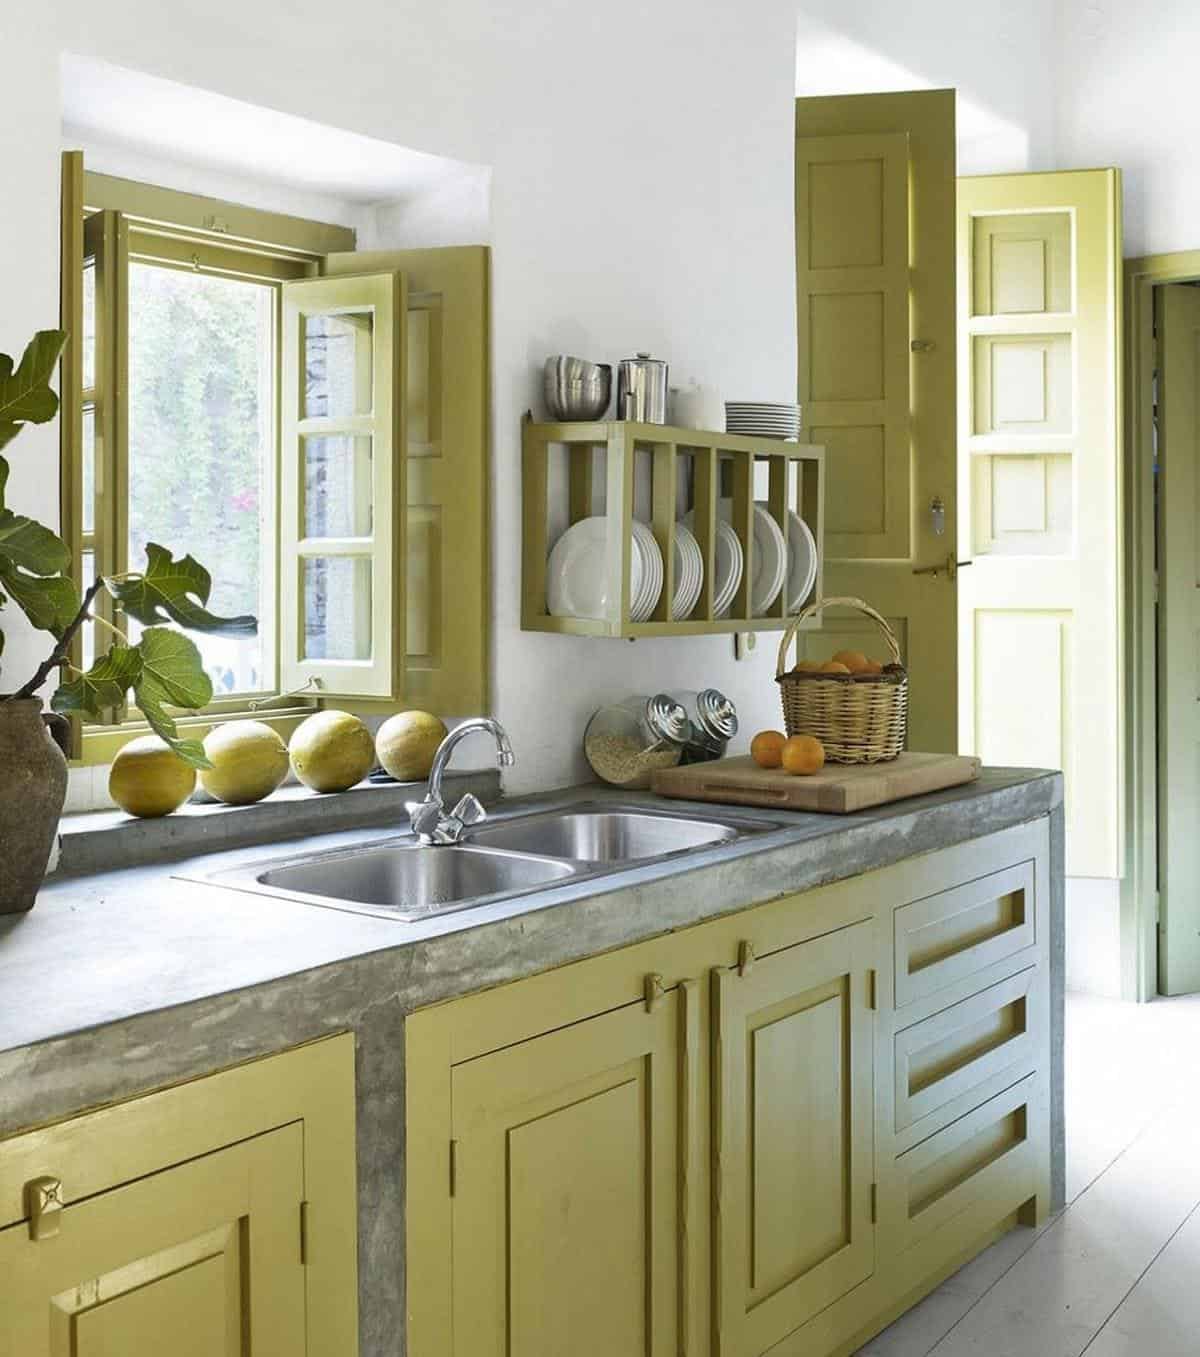  thiết kế phòng bếp tông màu pastel vàng đồng bộ